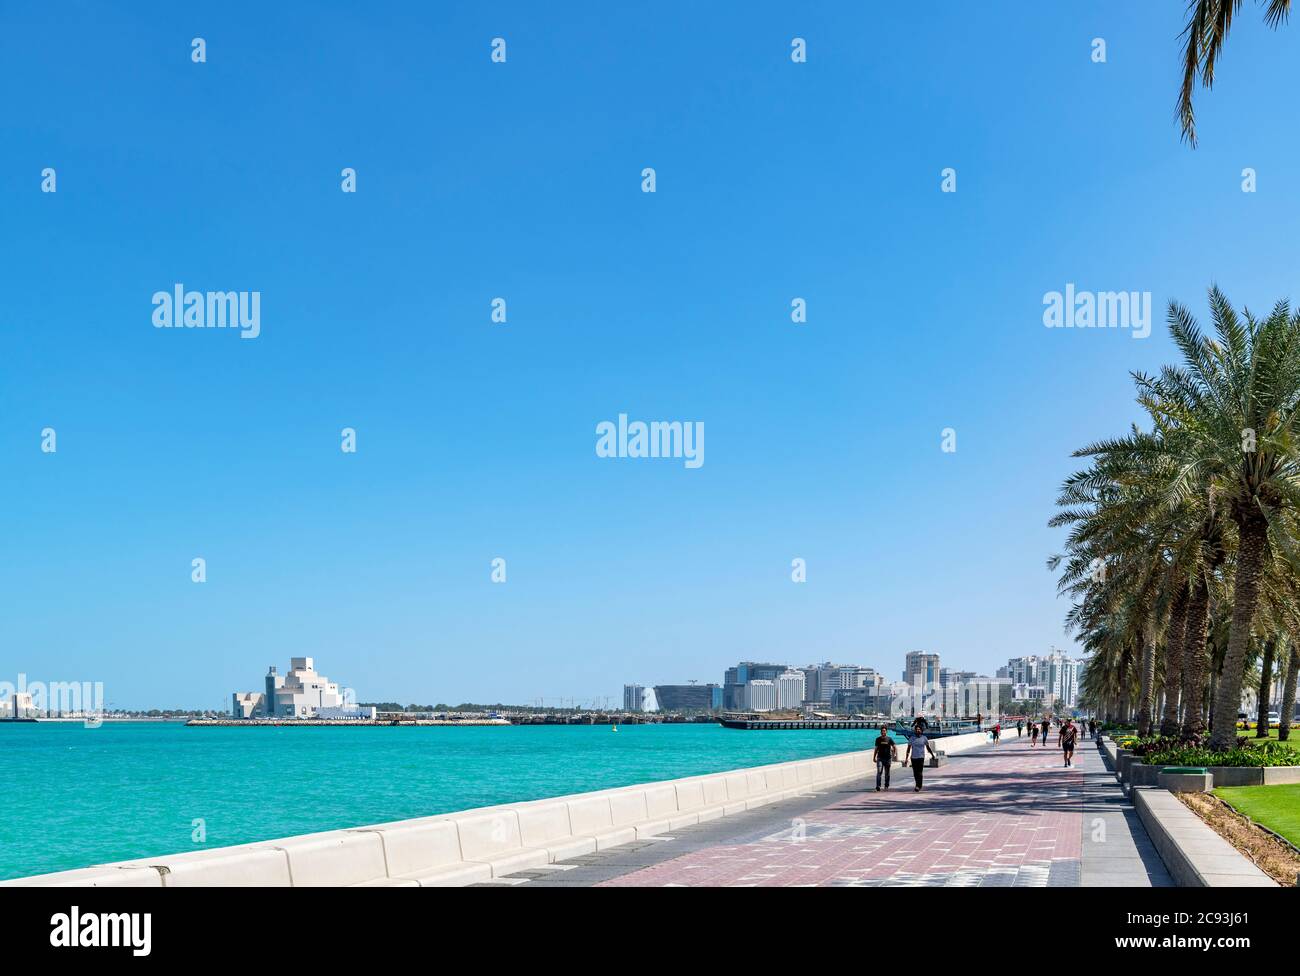 La Corniche mirando hacia el Museo de Arte Islámico, Doha, Qatar, Oriente Medio Foto de stock